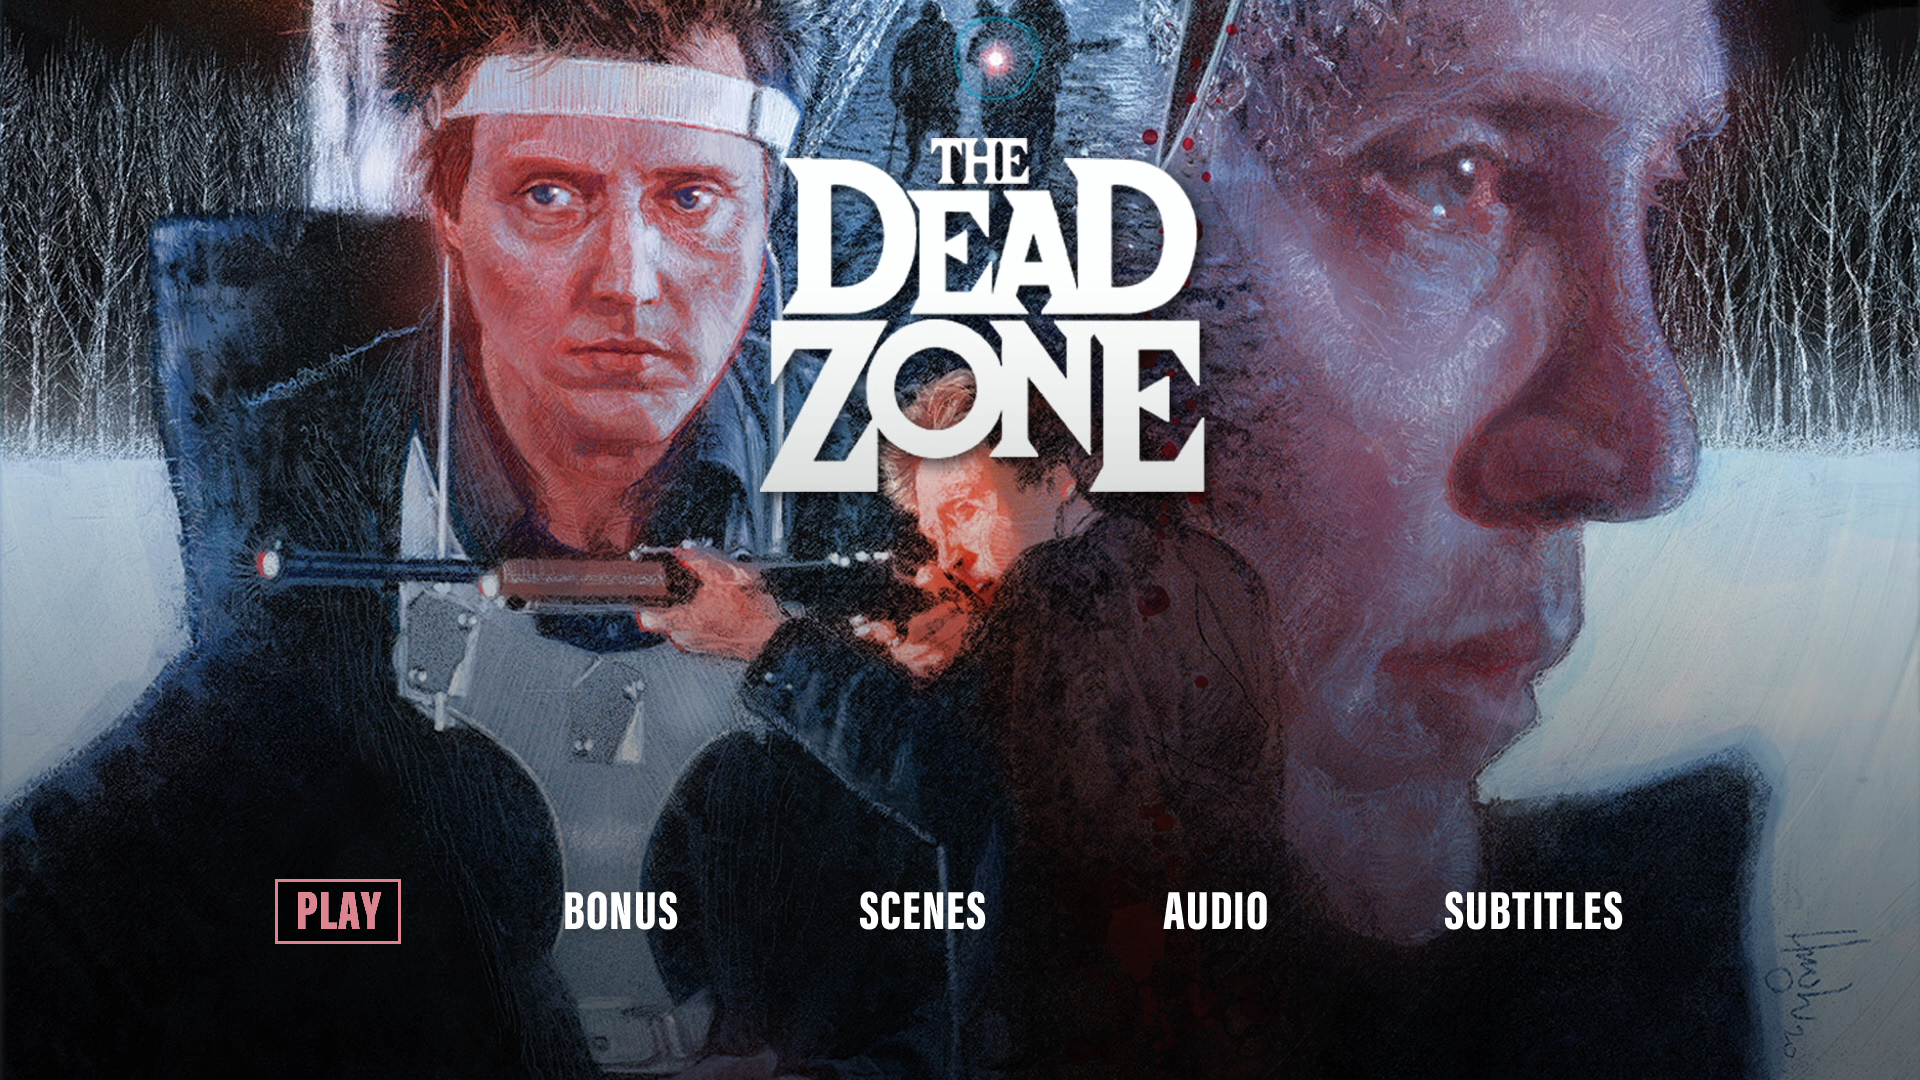 The Dead Zone Blu-ray menu